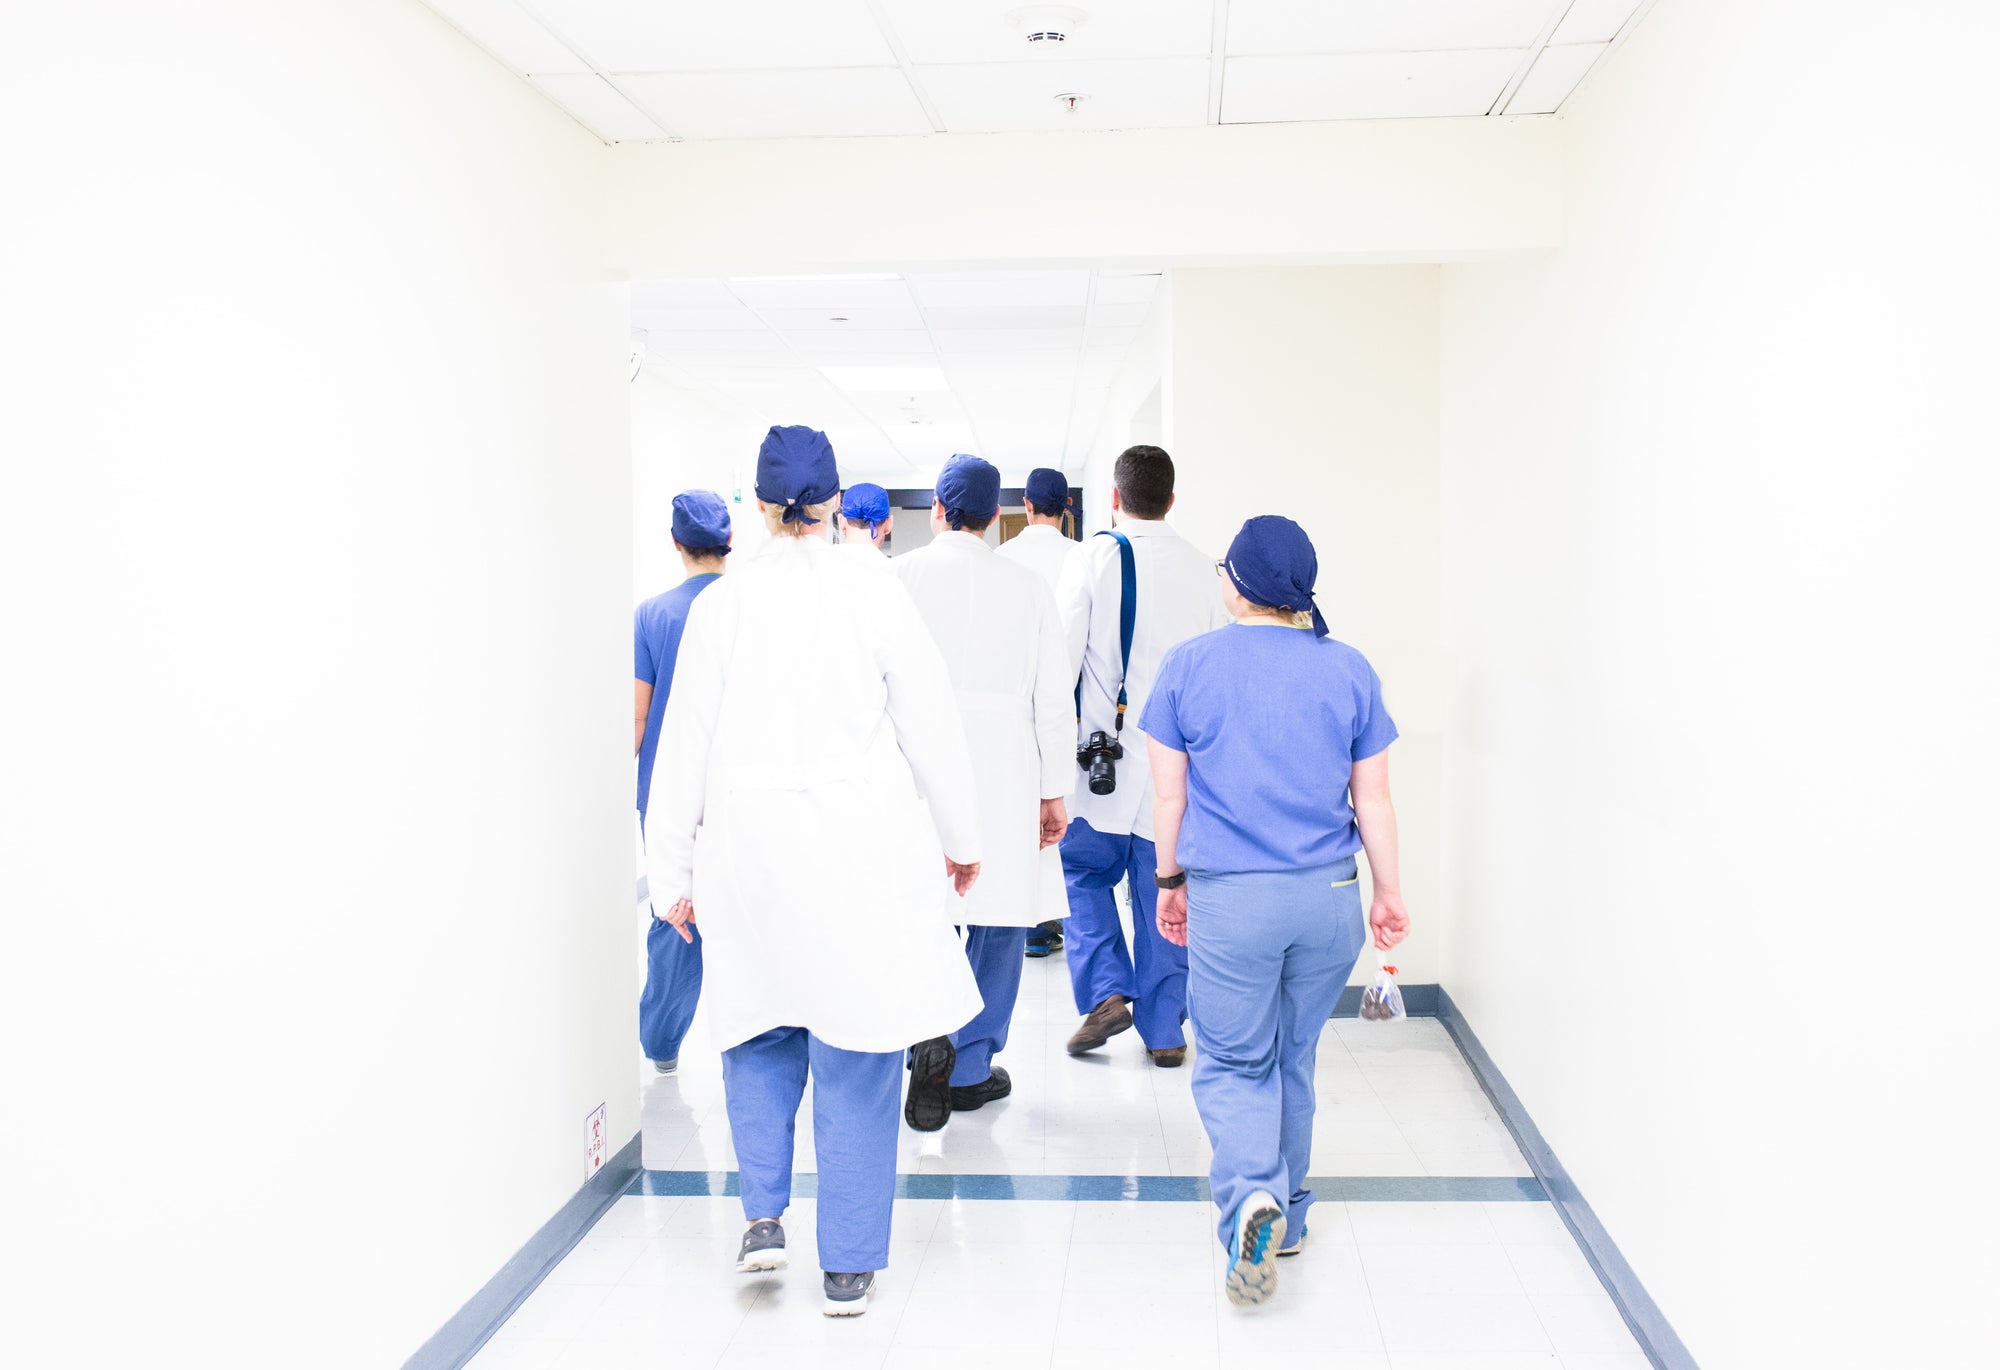 Medical staff walking down a hospital hallway